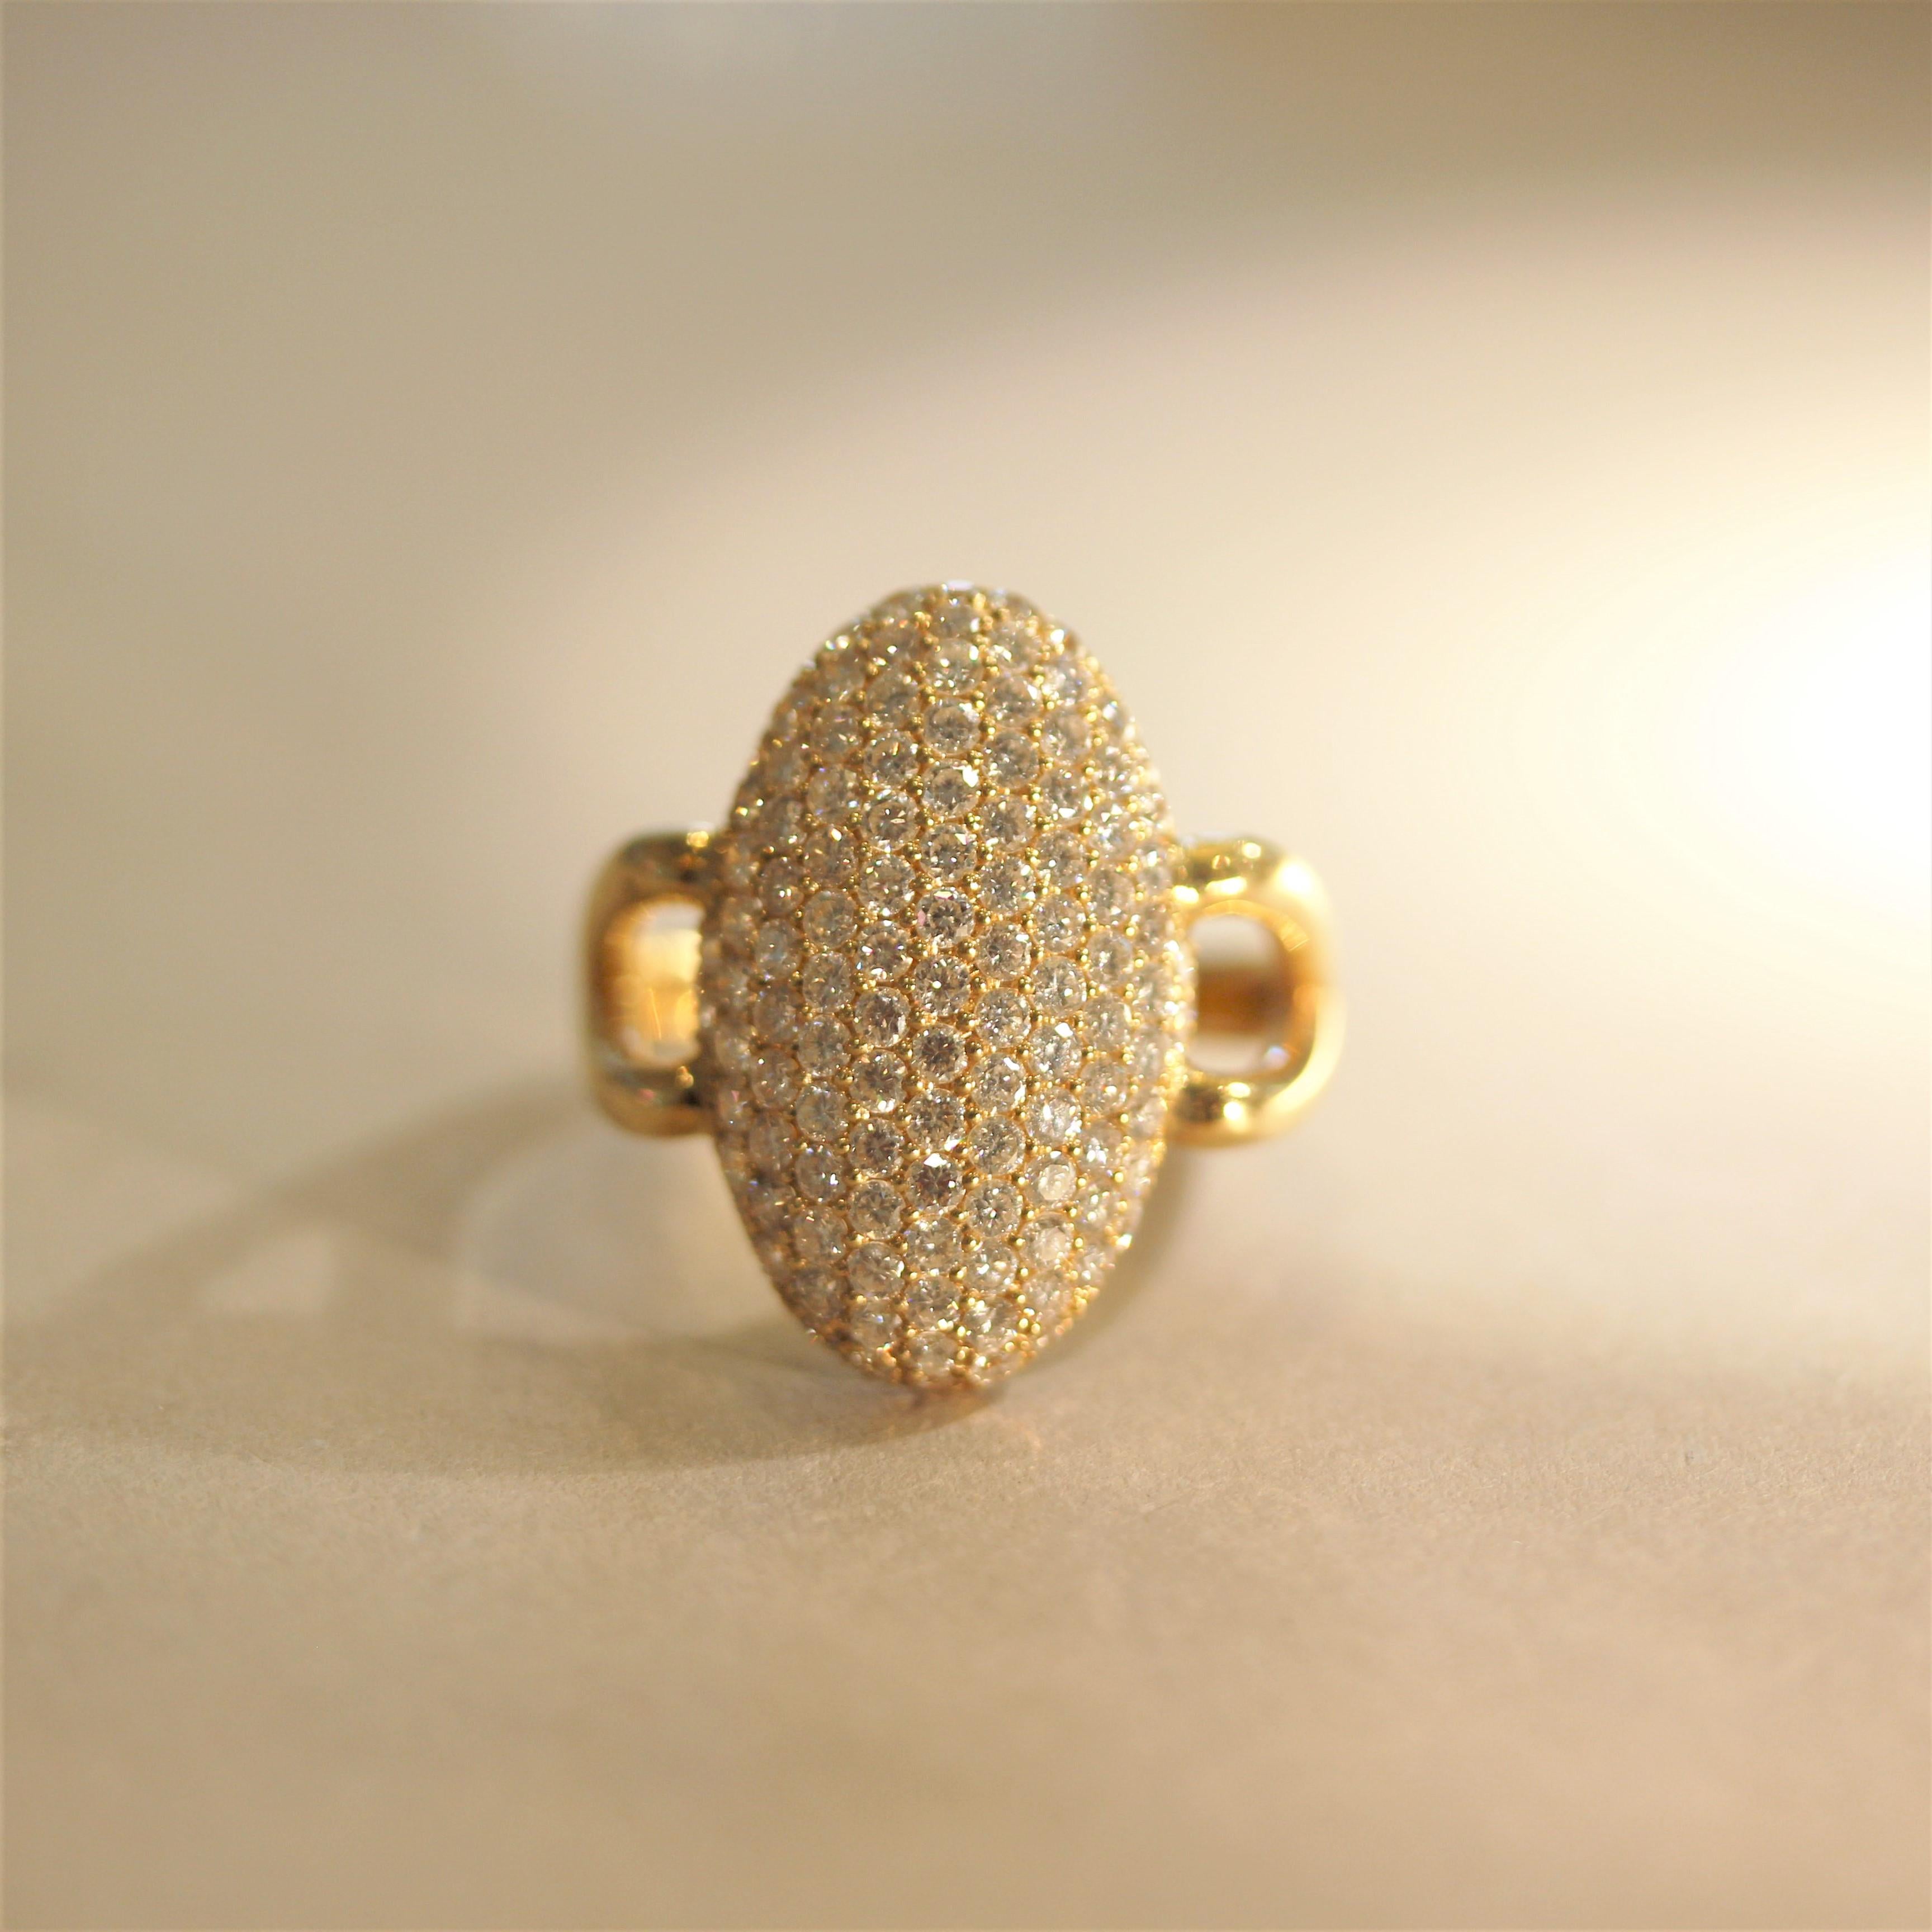 Ein schicker und stilvoller Ring im modernen Design! Er ist mit 2,13 Karat feiner, runder Brillanten besetzt, die in einer langgestreckten, kuppelförmigen Goldfassung im Navettestil eingefasst sind. Dieser hübsche Ring ist aus 18 Karat Gelbgold